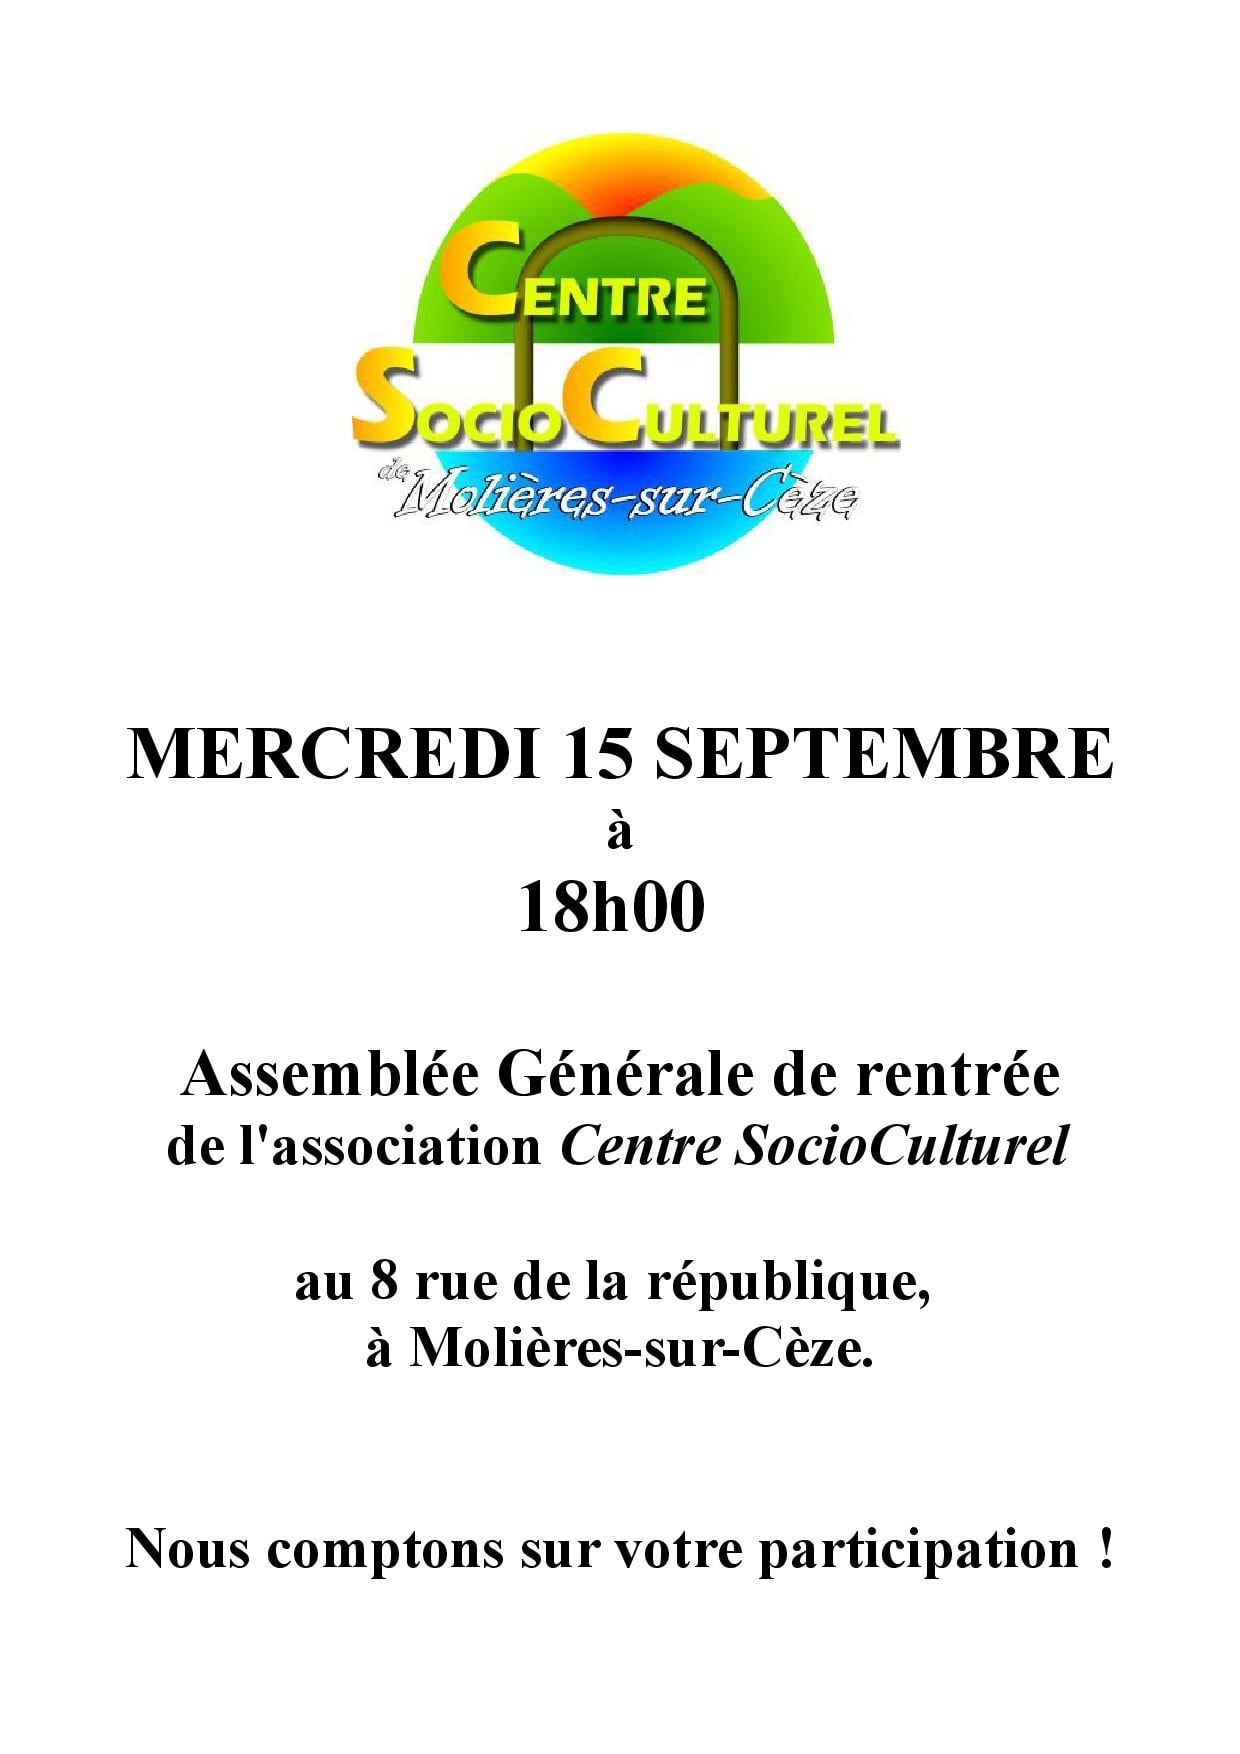 Centre SocioCulturel à Molières-sur-Cèze